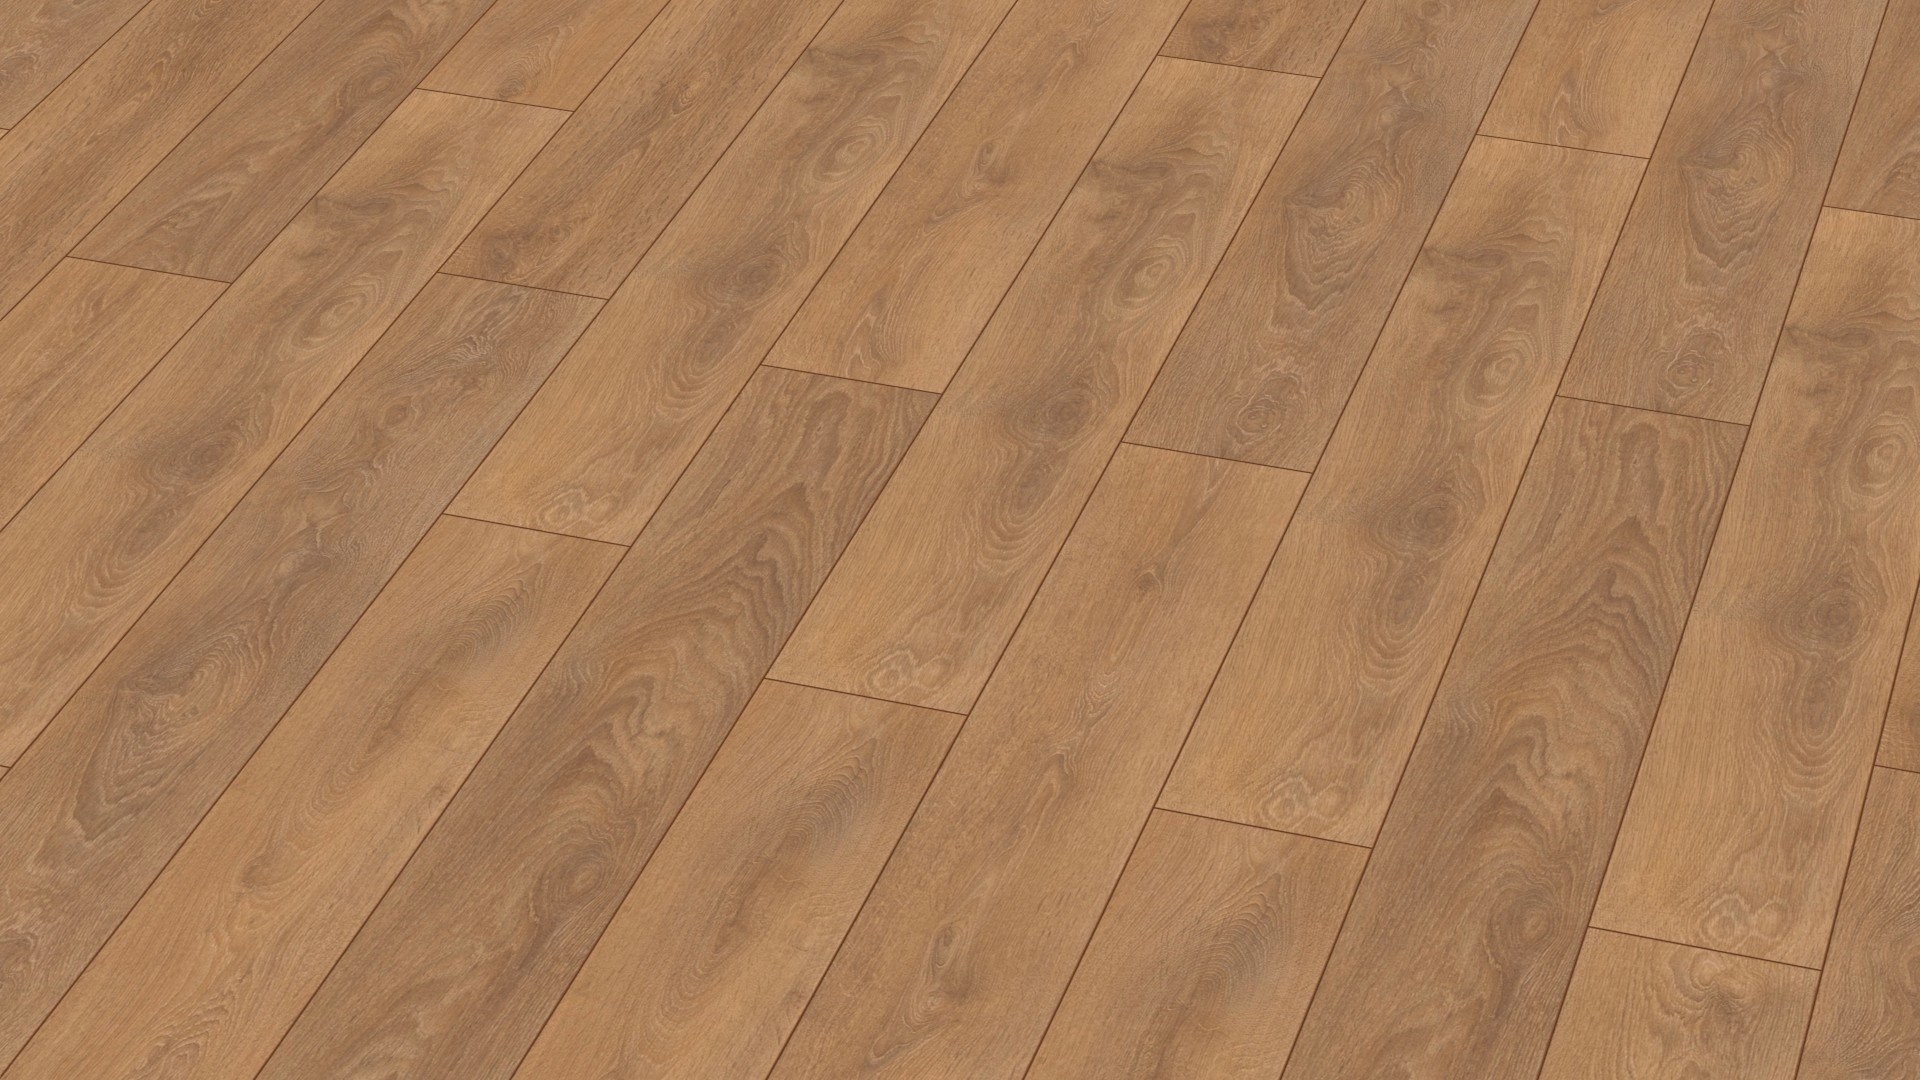 Laminate flooring – Classic Line